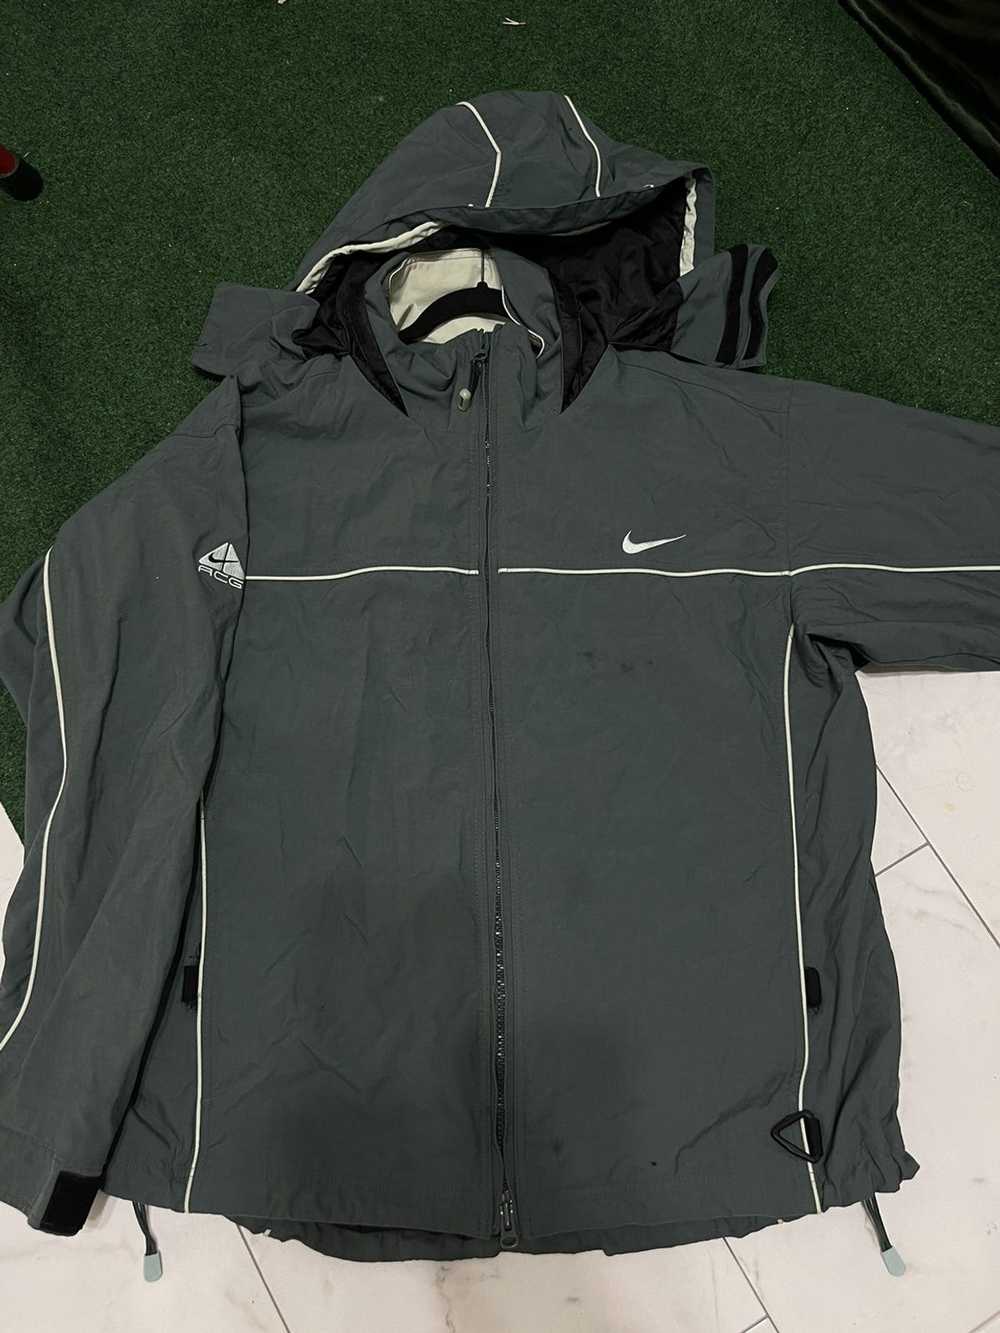 Nike ACG nike acg vintage jacket - image 1